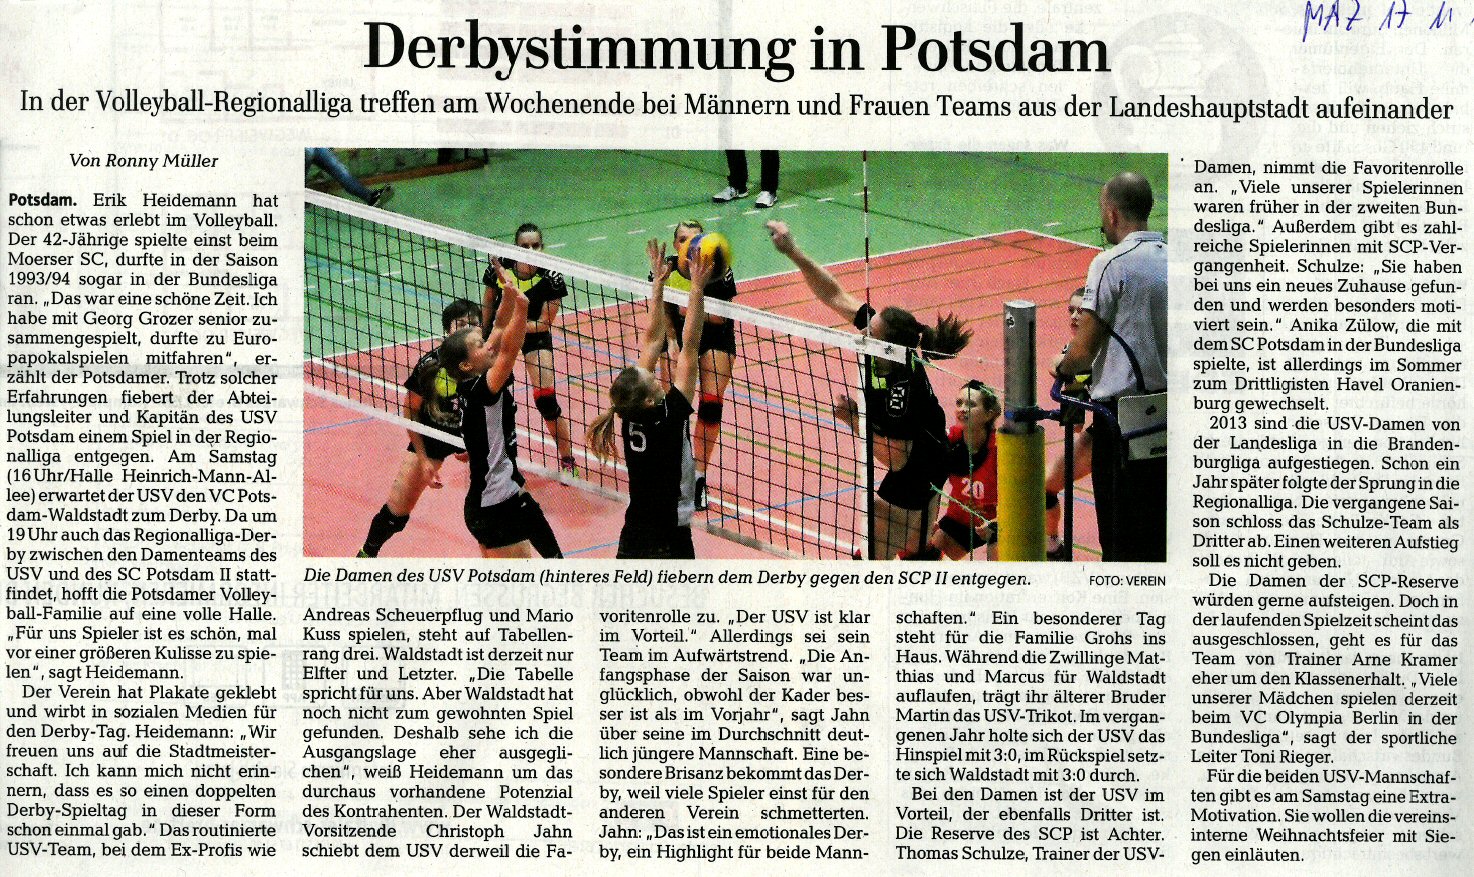 Erschienen in der Märkischen Allgemeinen Zeitung (Lokalteil Potsdam) am 17.11.2015